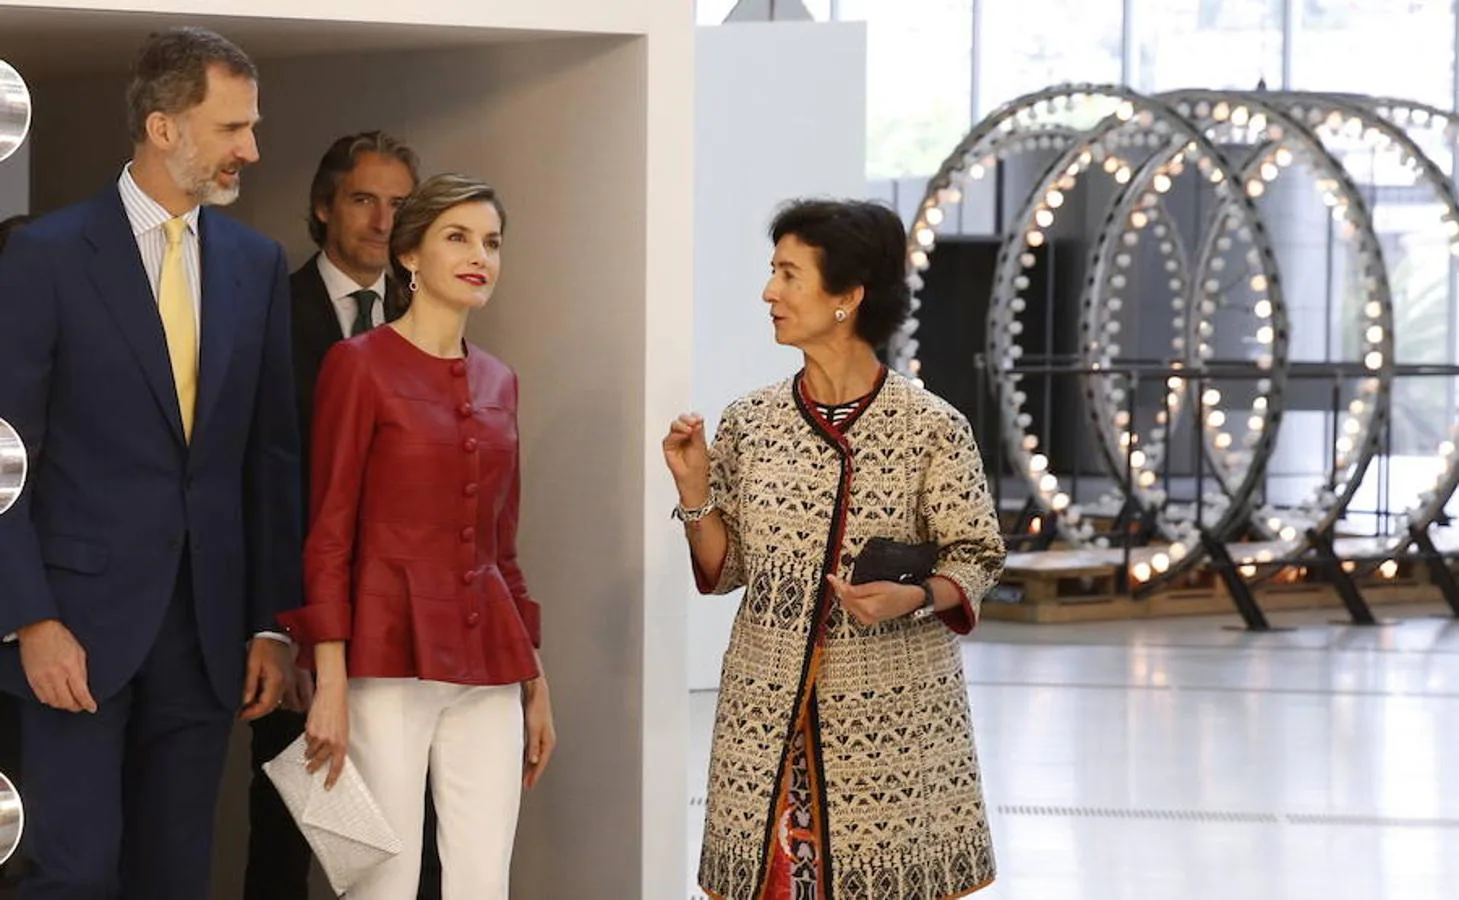 Los Reyes Felipe y Letizia recorren una de las salas de exposiciones en la inauguración del Centro Botín, el nuevo centro de arte que pone en marcha la Fundación Botín bajo un diseño de Renzo Piano y sobre la bahía de Santander.. Efe